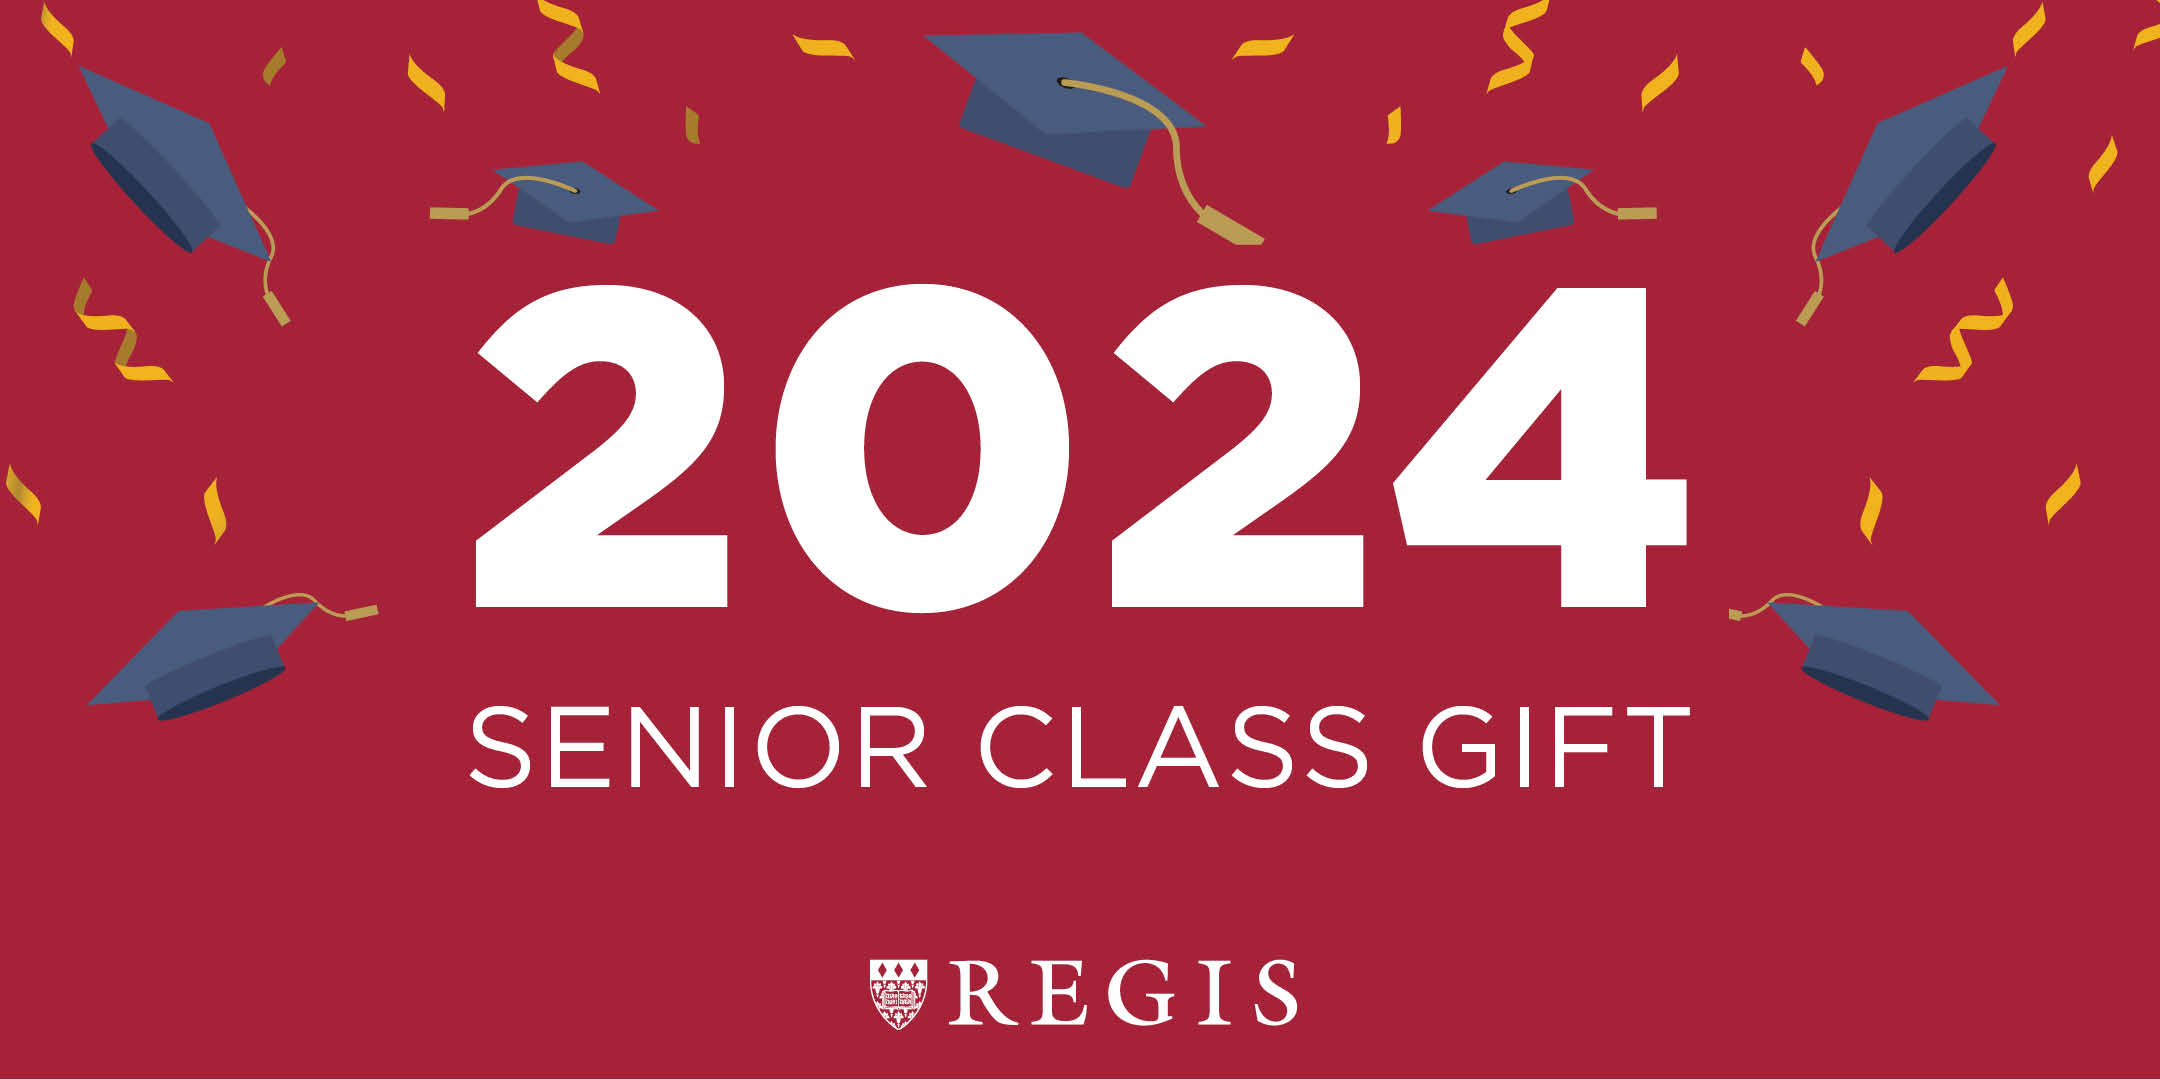 Senior Class Gift | Class of 2024